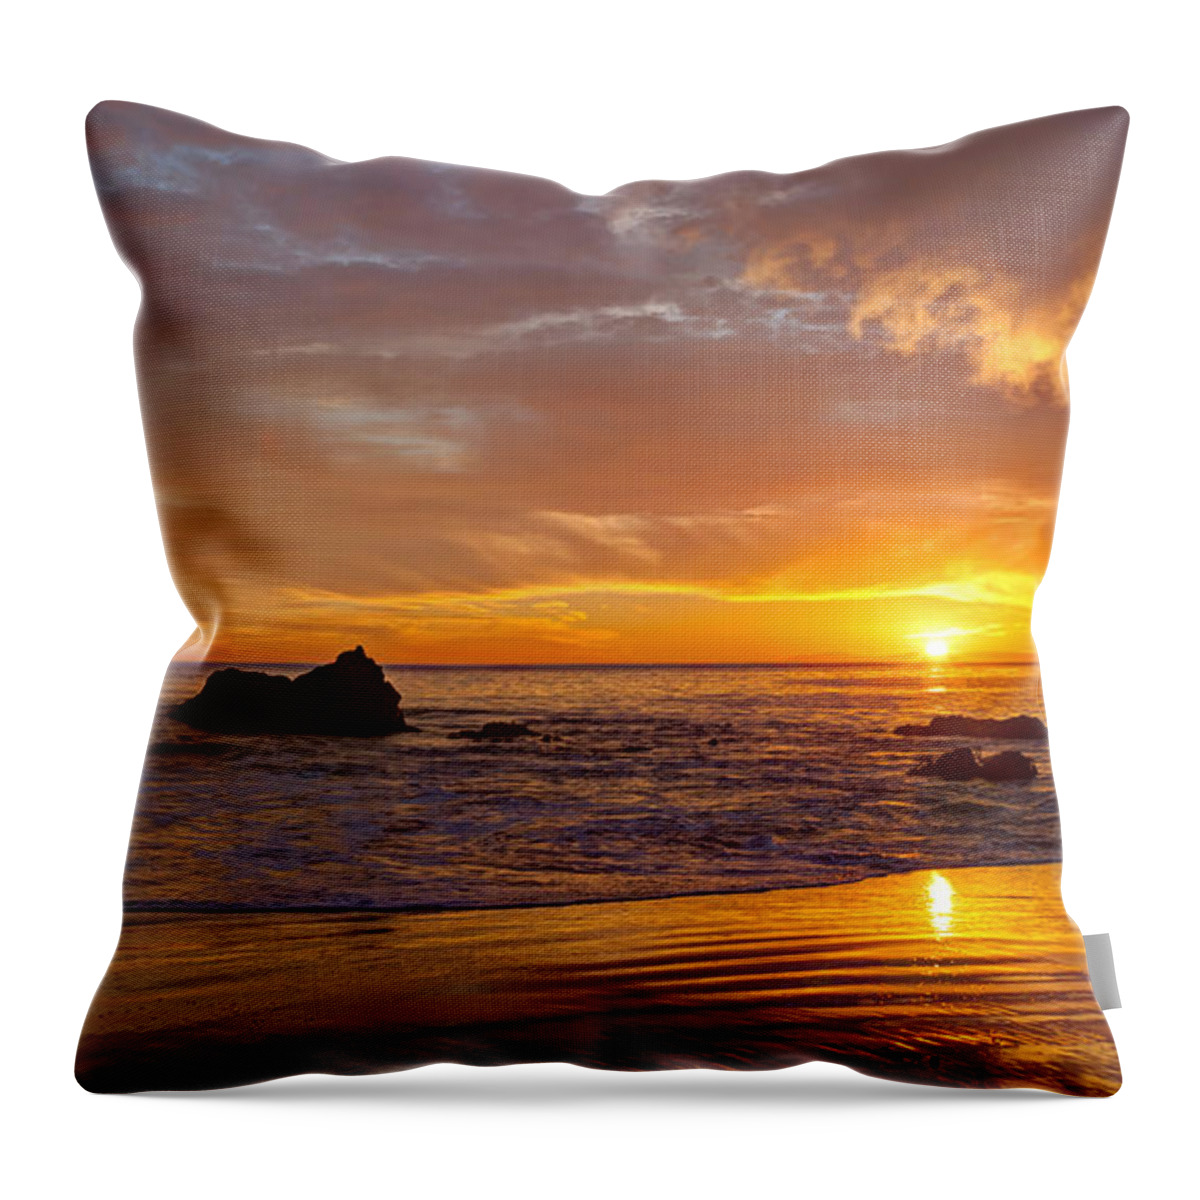 Laguna Beach Throw Pillow featuring the photograph Pacific Edge Laguna Beach by Cliff Wassmann